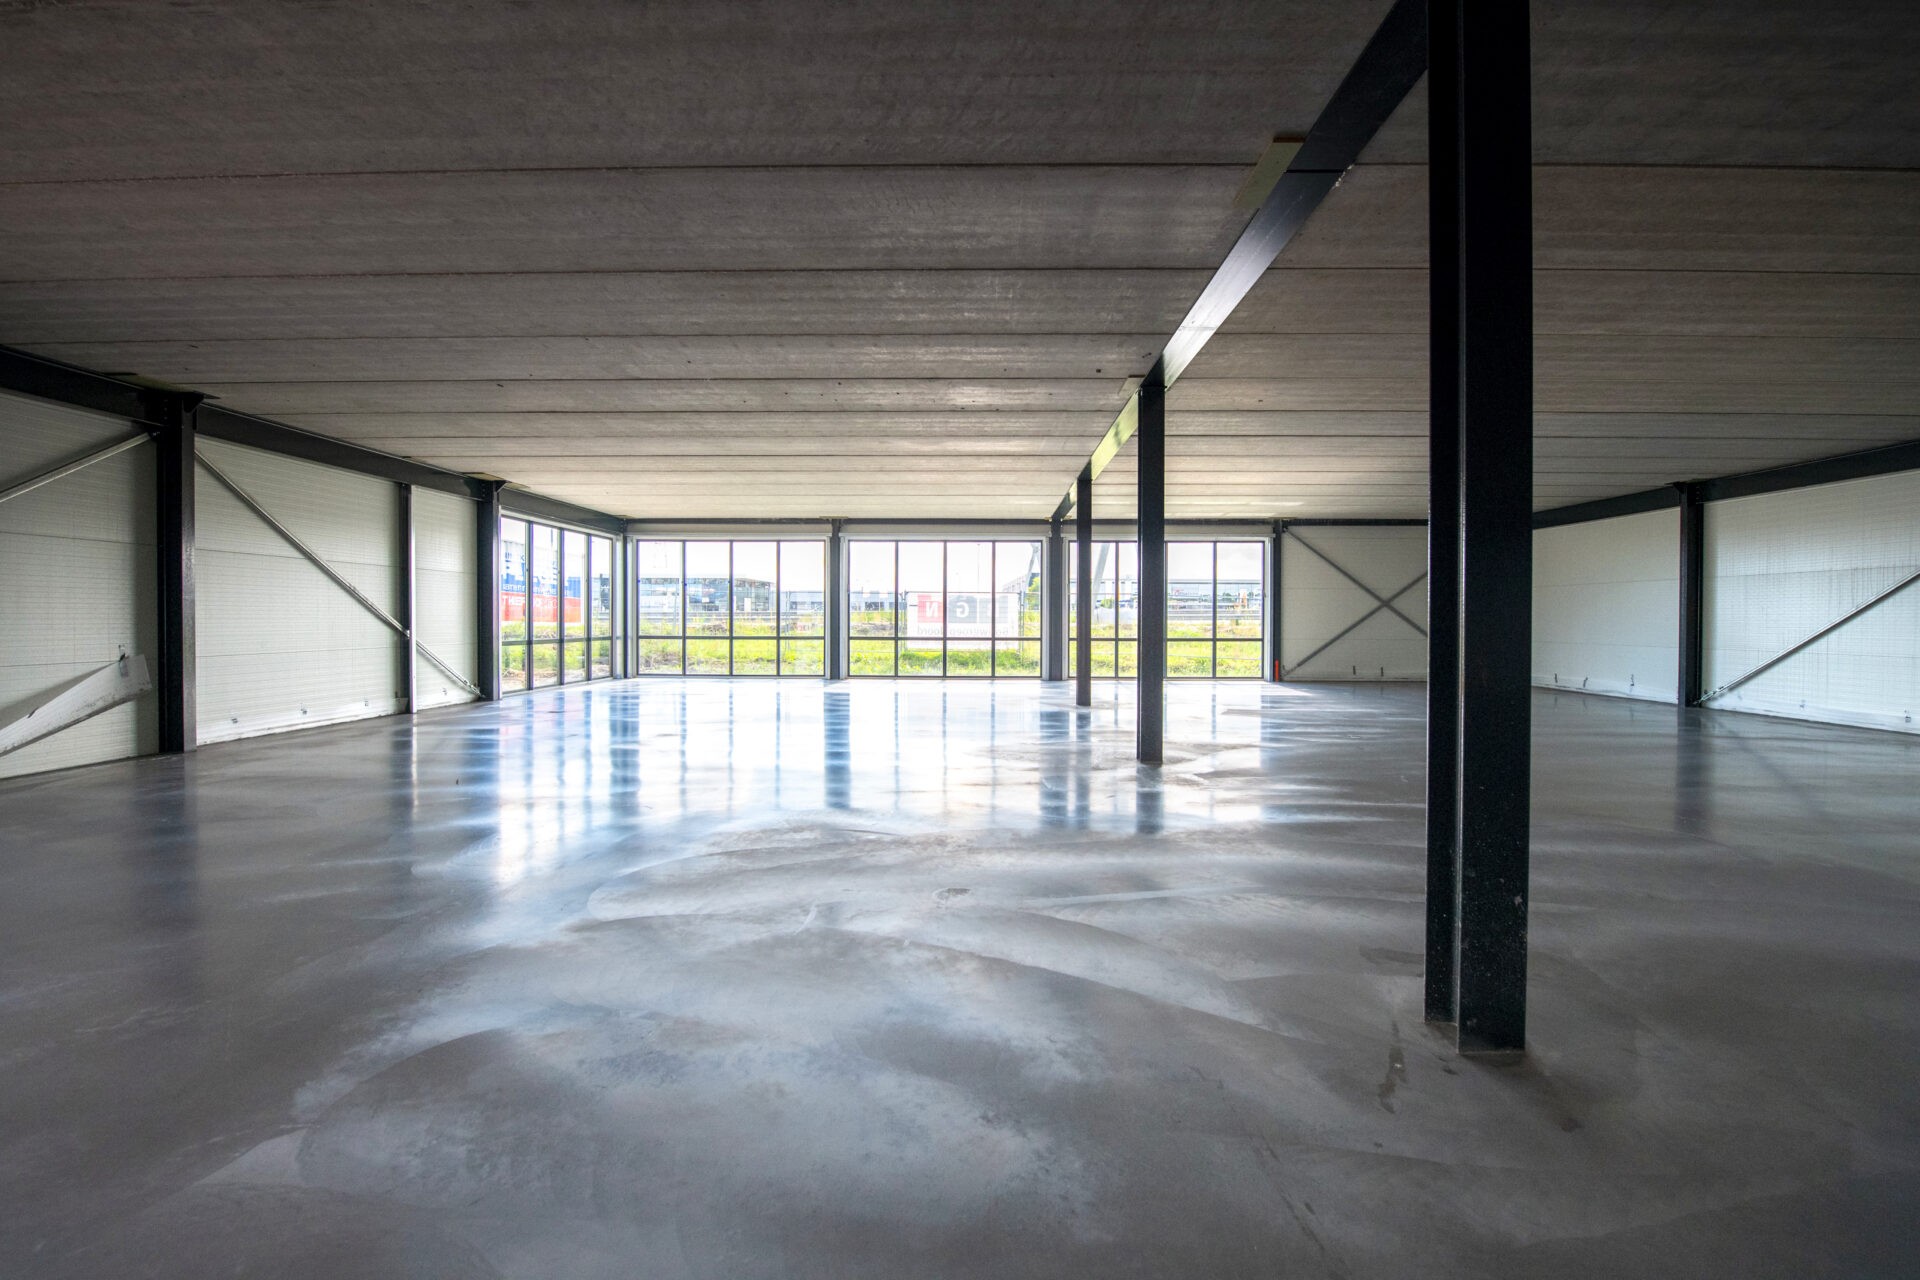 Cementdekvloeren in het nieuwe bedrijfsgebouw van Plieger en ThermoNoord te Groningen